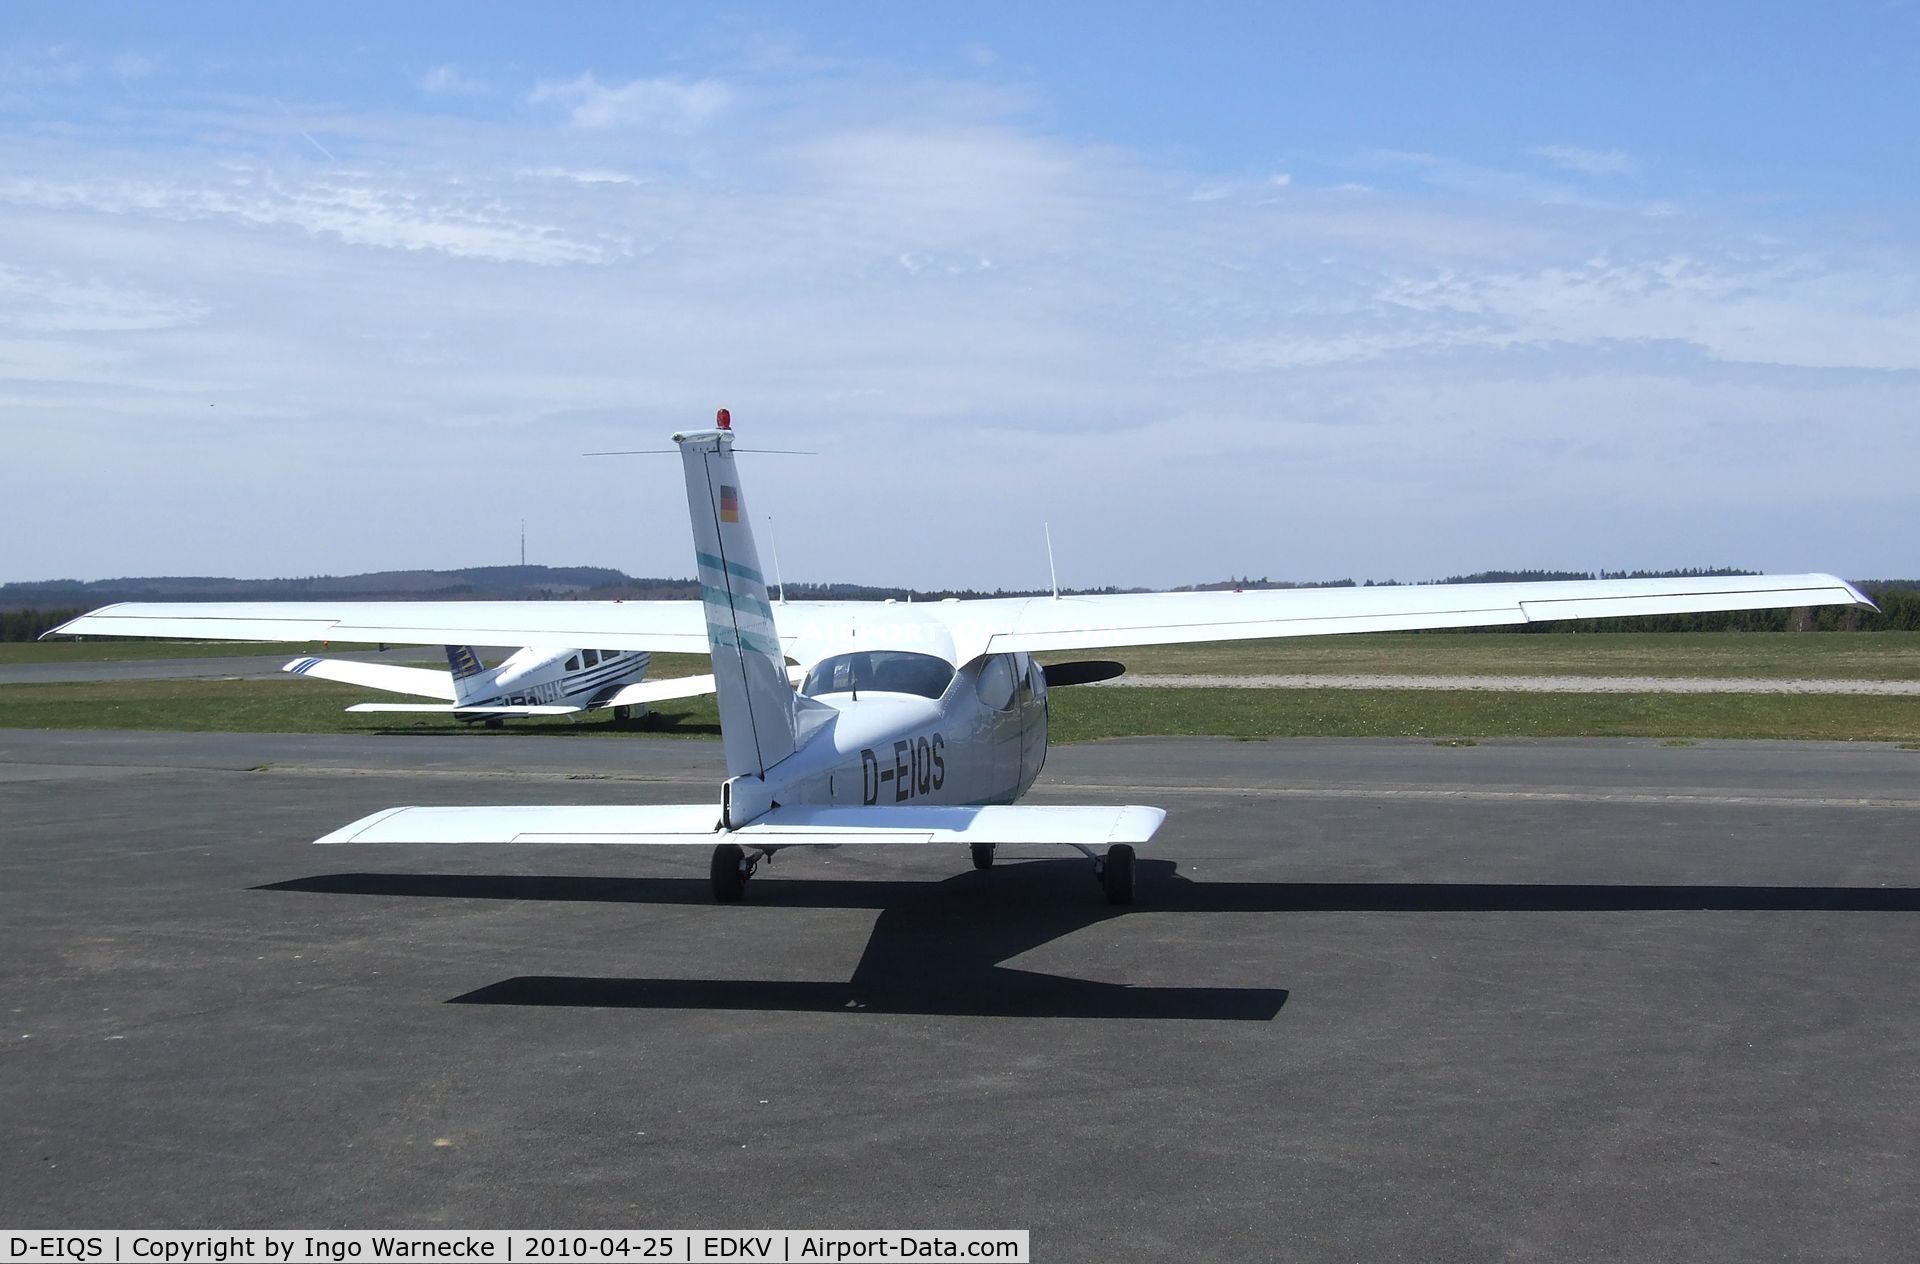 D-EIQS, Reims F177RG Cardinal RG C/N 0093, Cessna (Reims) F177RG Cardinal RG at Dahlemer Binz airfield